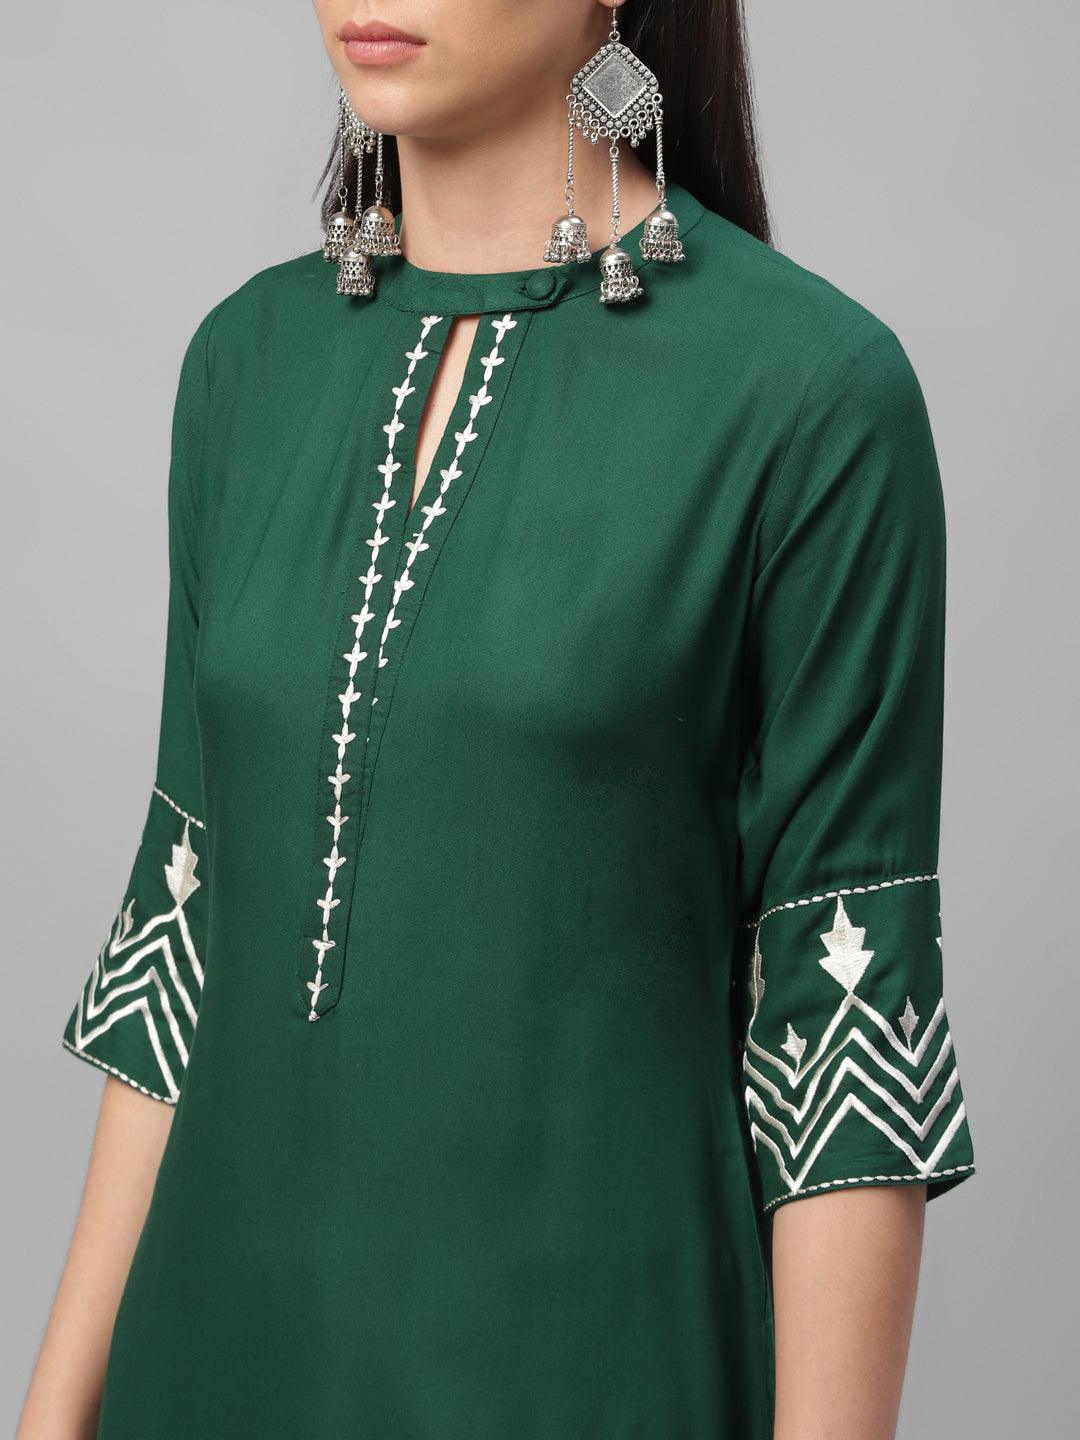 Green Embroidered Rayon Kurta - Libas